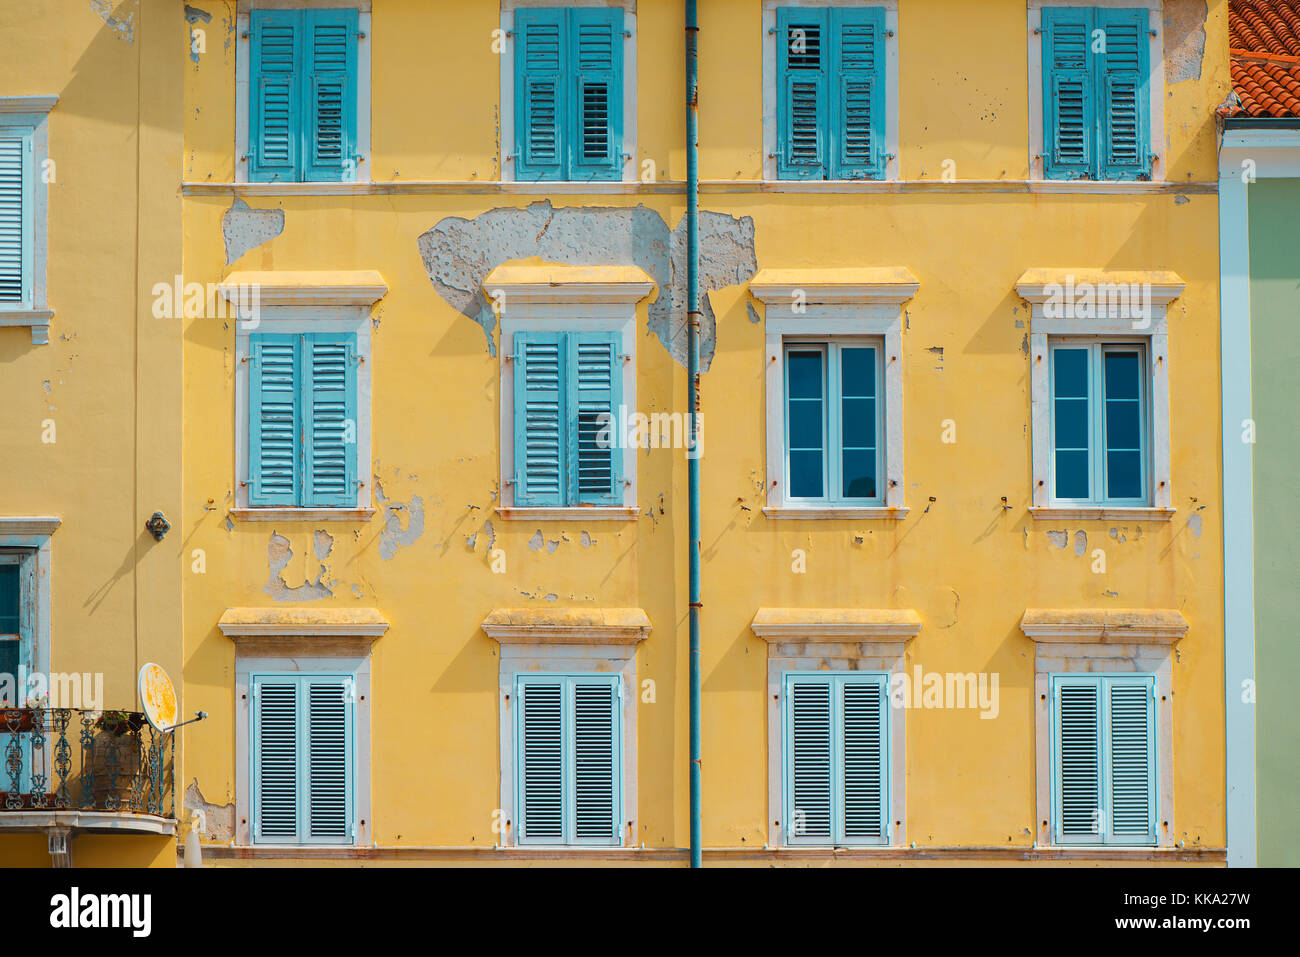 Die typische mediterrane Architektur Fassade Stil mit Holz- Shutter Jalousien an den Fenstern Stockfoto